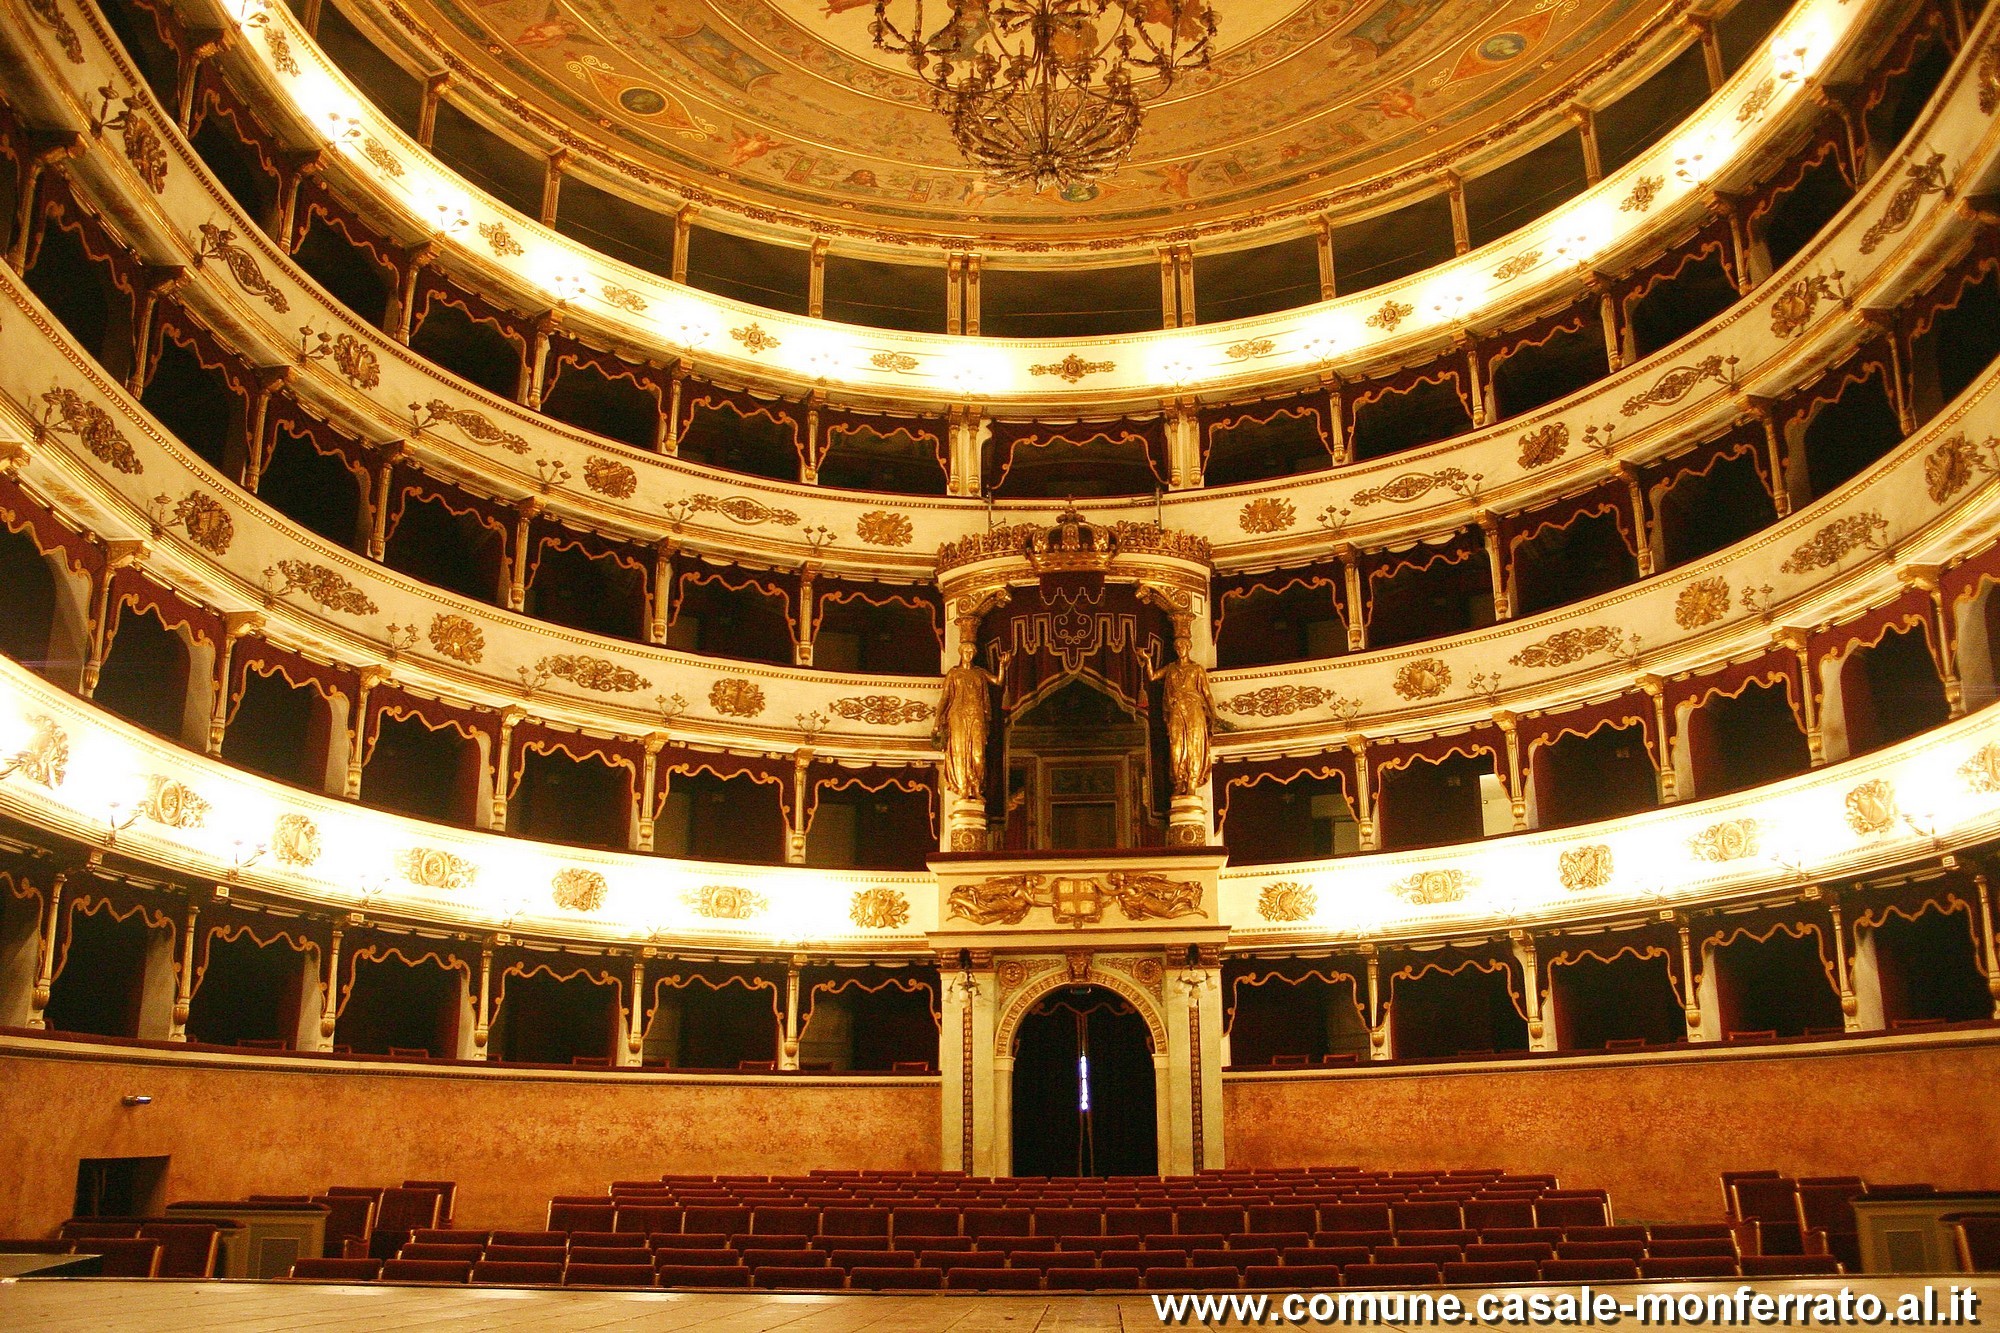 La terza conferenza nazionale governativa sull'amianto si svolgerà a Casale Monferrato, al Teatro Municipale, venerdì 24 e sabato 25 novembre.